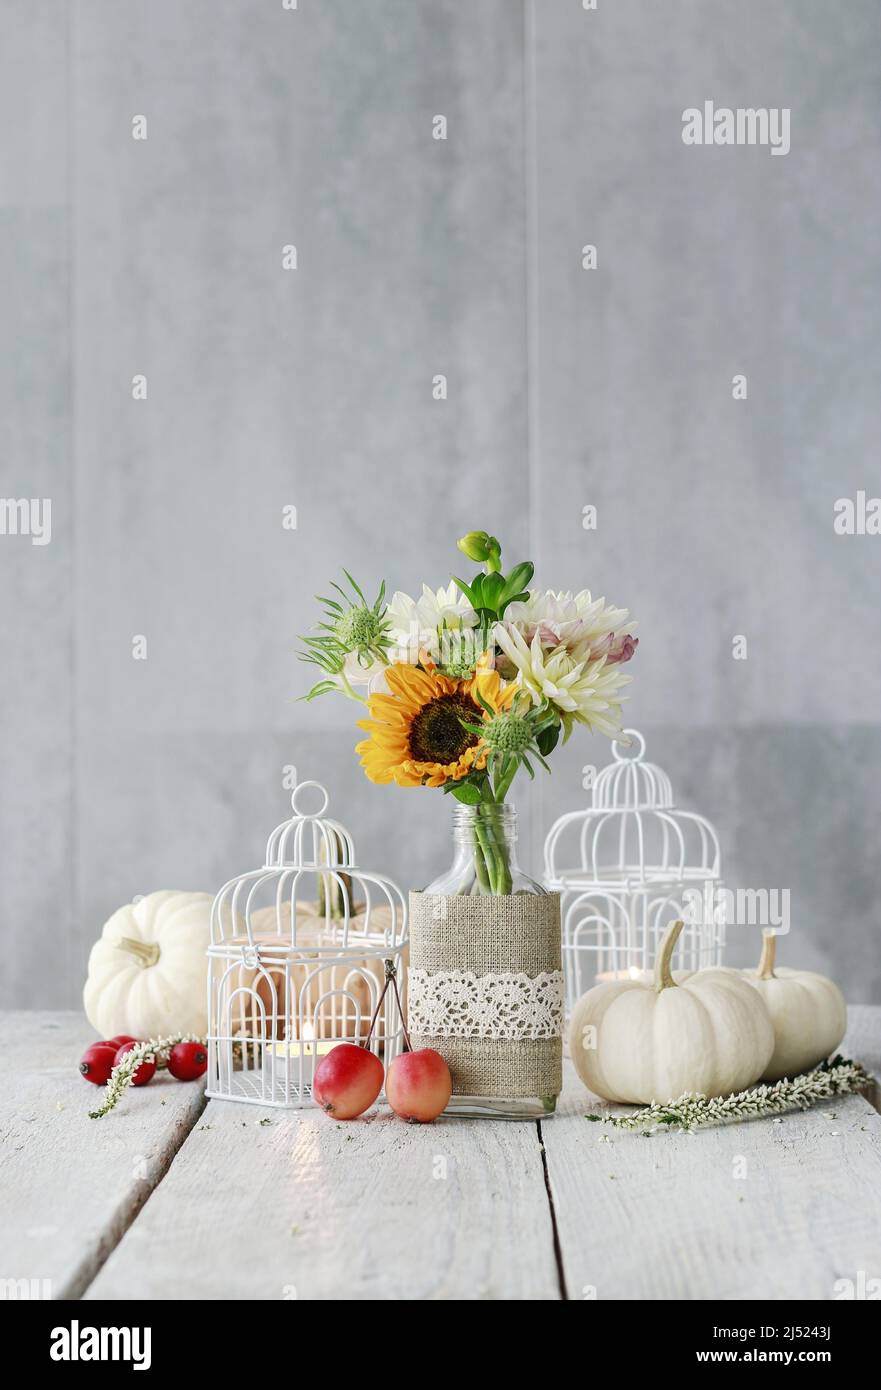 Decoración de mesa con girasoles y dahlias. Velas dentro de jaulas de aves vintage, calabazas y manzanas paradisíacas. Motivo postal. Foto de stock